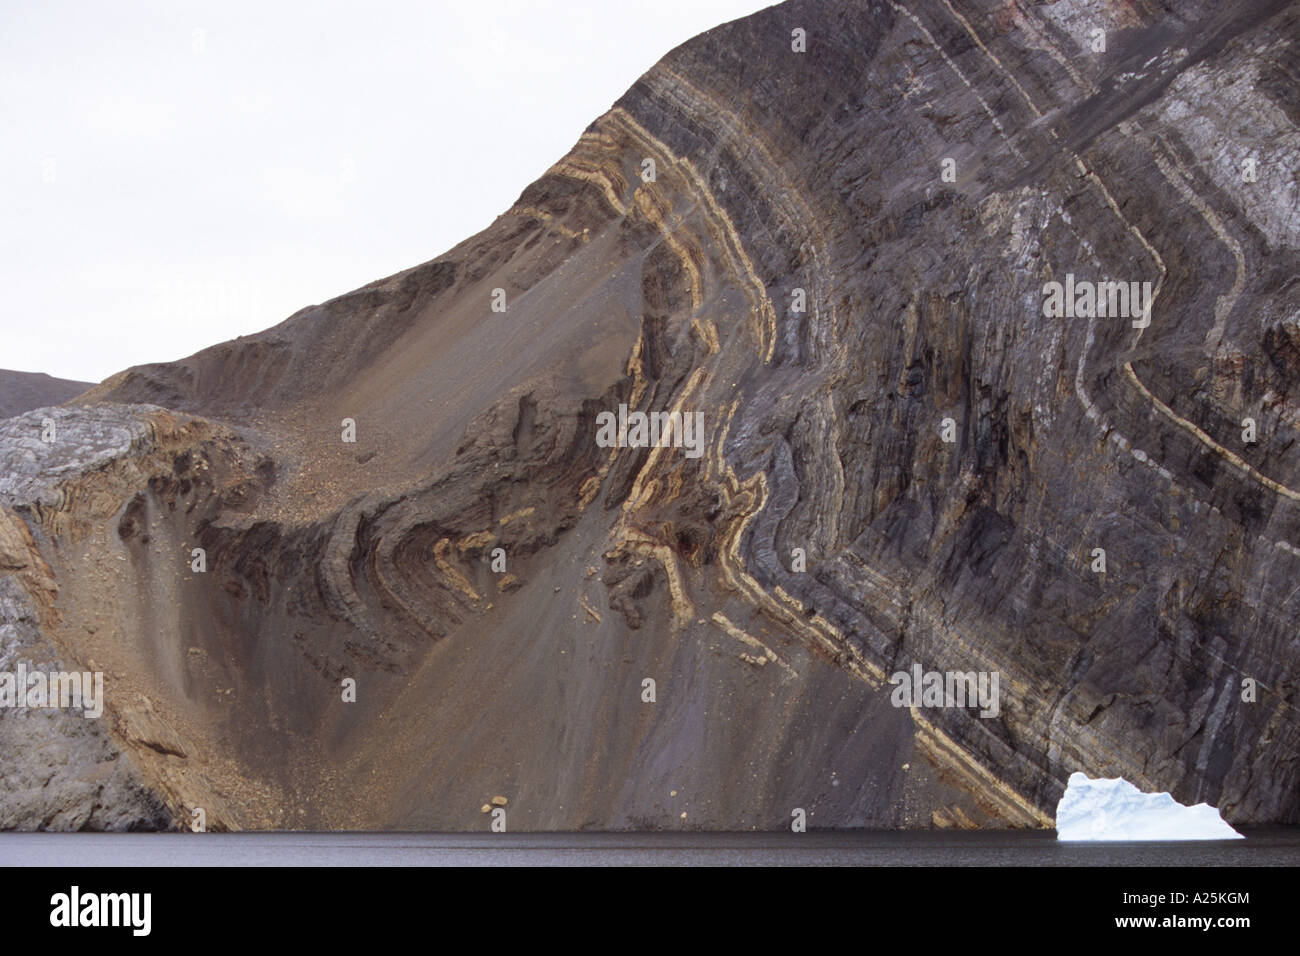 Côte rocheuse de l'Antarctique à Sund, strates géologiques, 600 millions d'années, le Groenland, l'Est du Groenland, Groenland Nationalpark, Tunu Banque D'Images